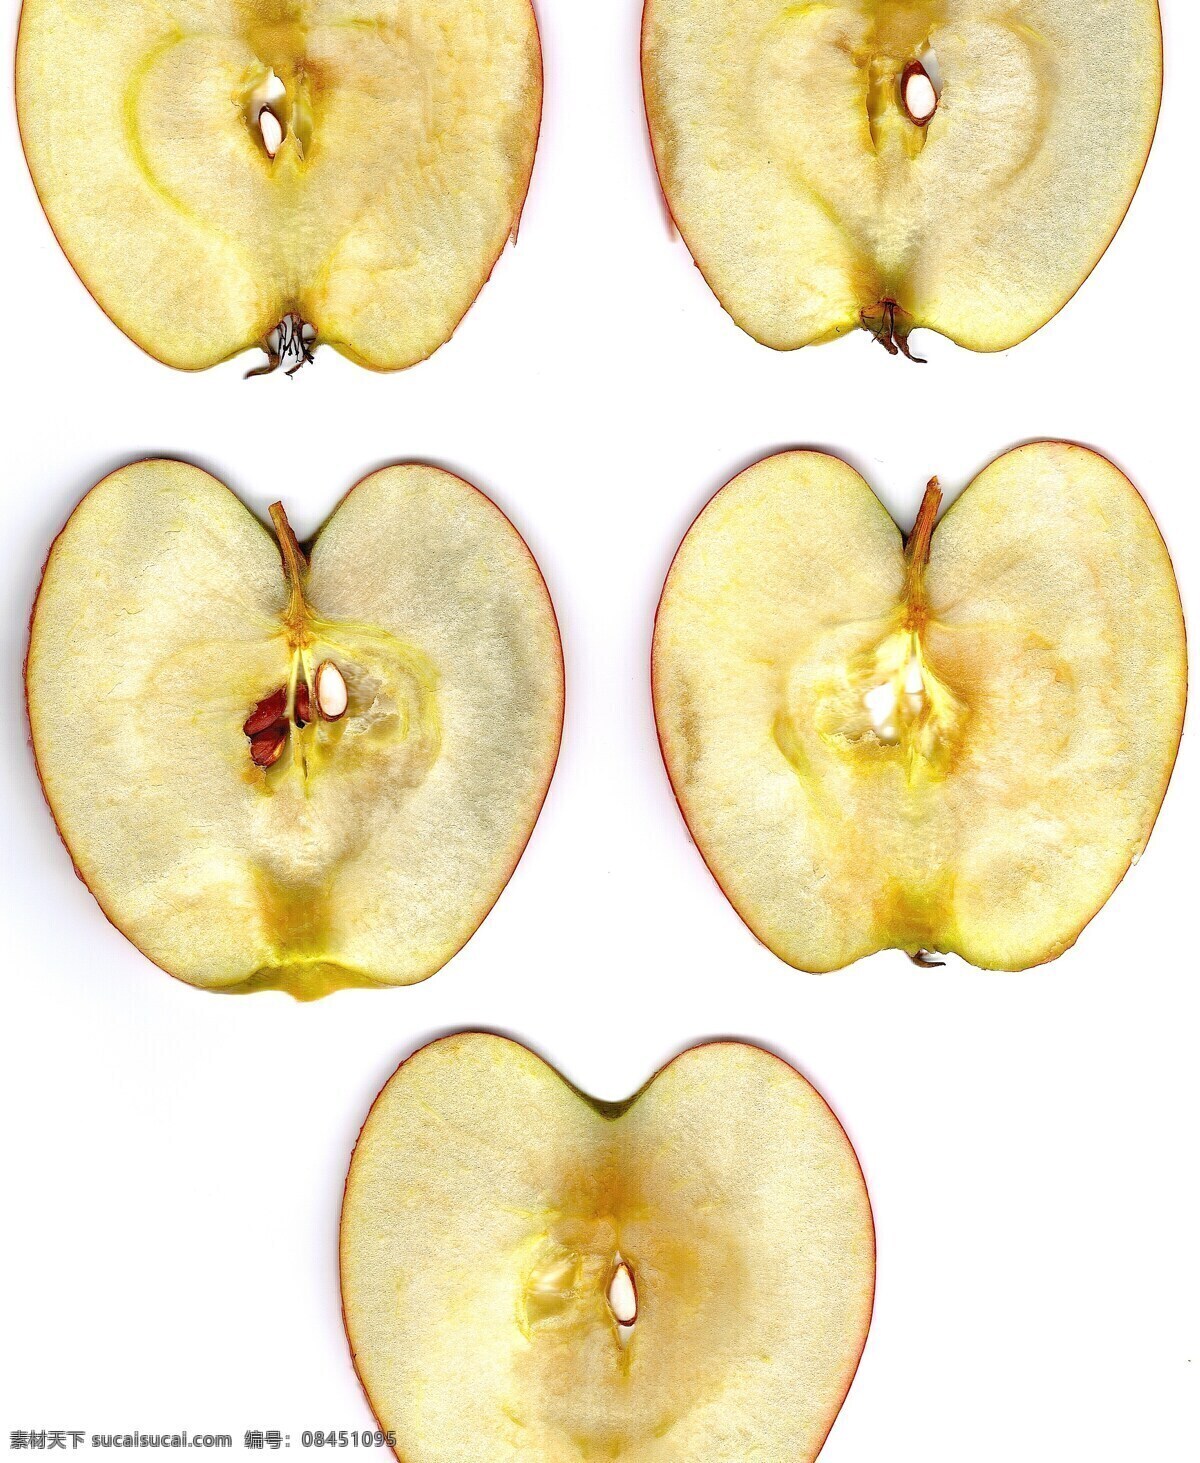 苹果 苹果切片 核 苹果的核心 截面 轮廓 水果